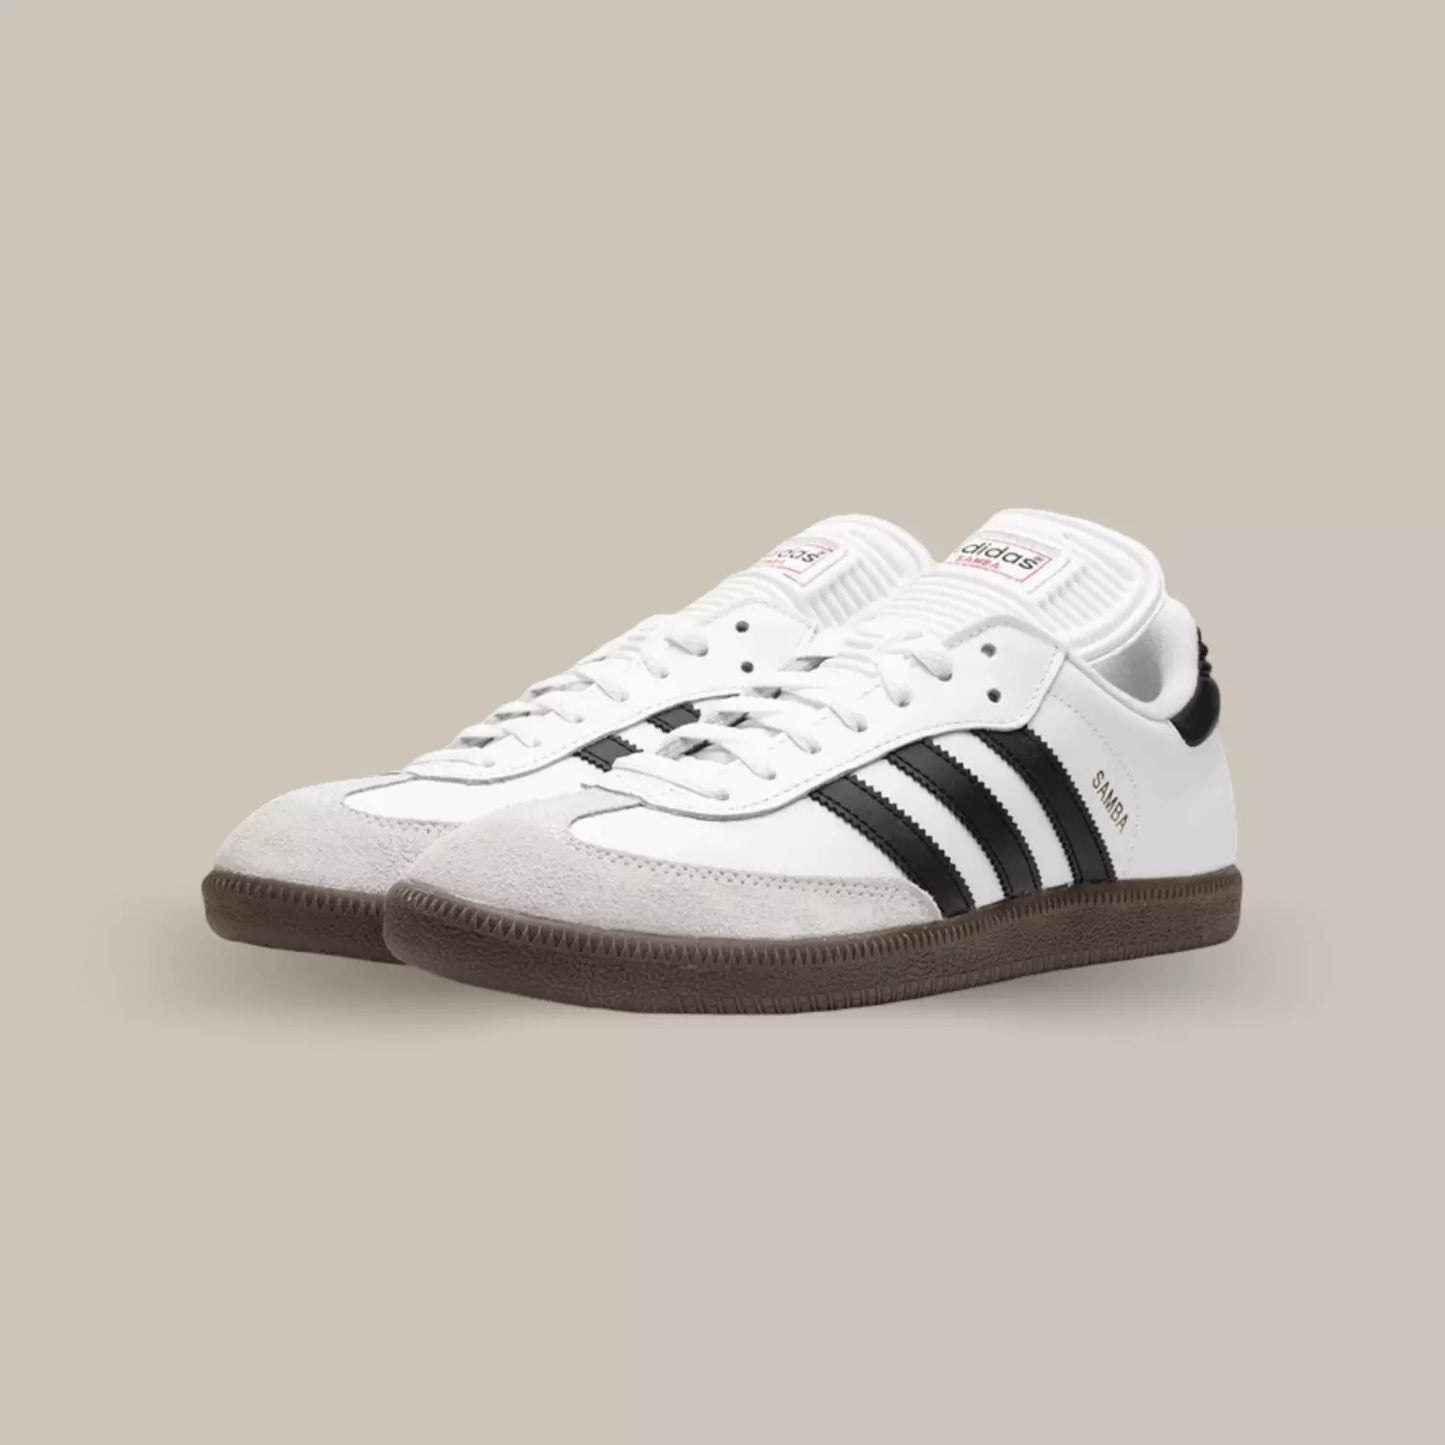 La Adidas Samba Classic White présente une base en cuir blanc complétée par du suède gris. On retrouve les trois bandes en cuir noir accompagnée par une semelle en gomme.